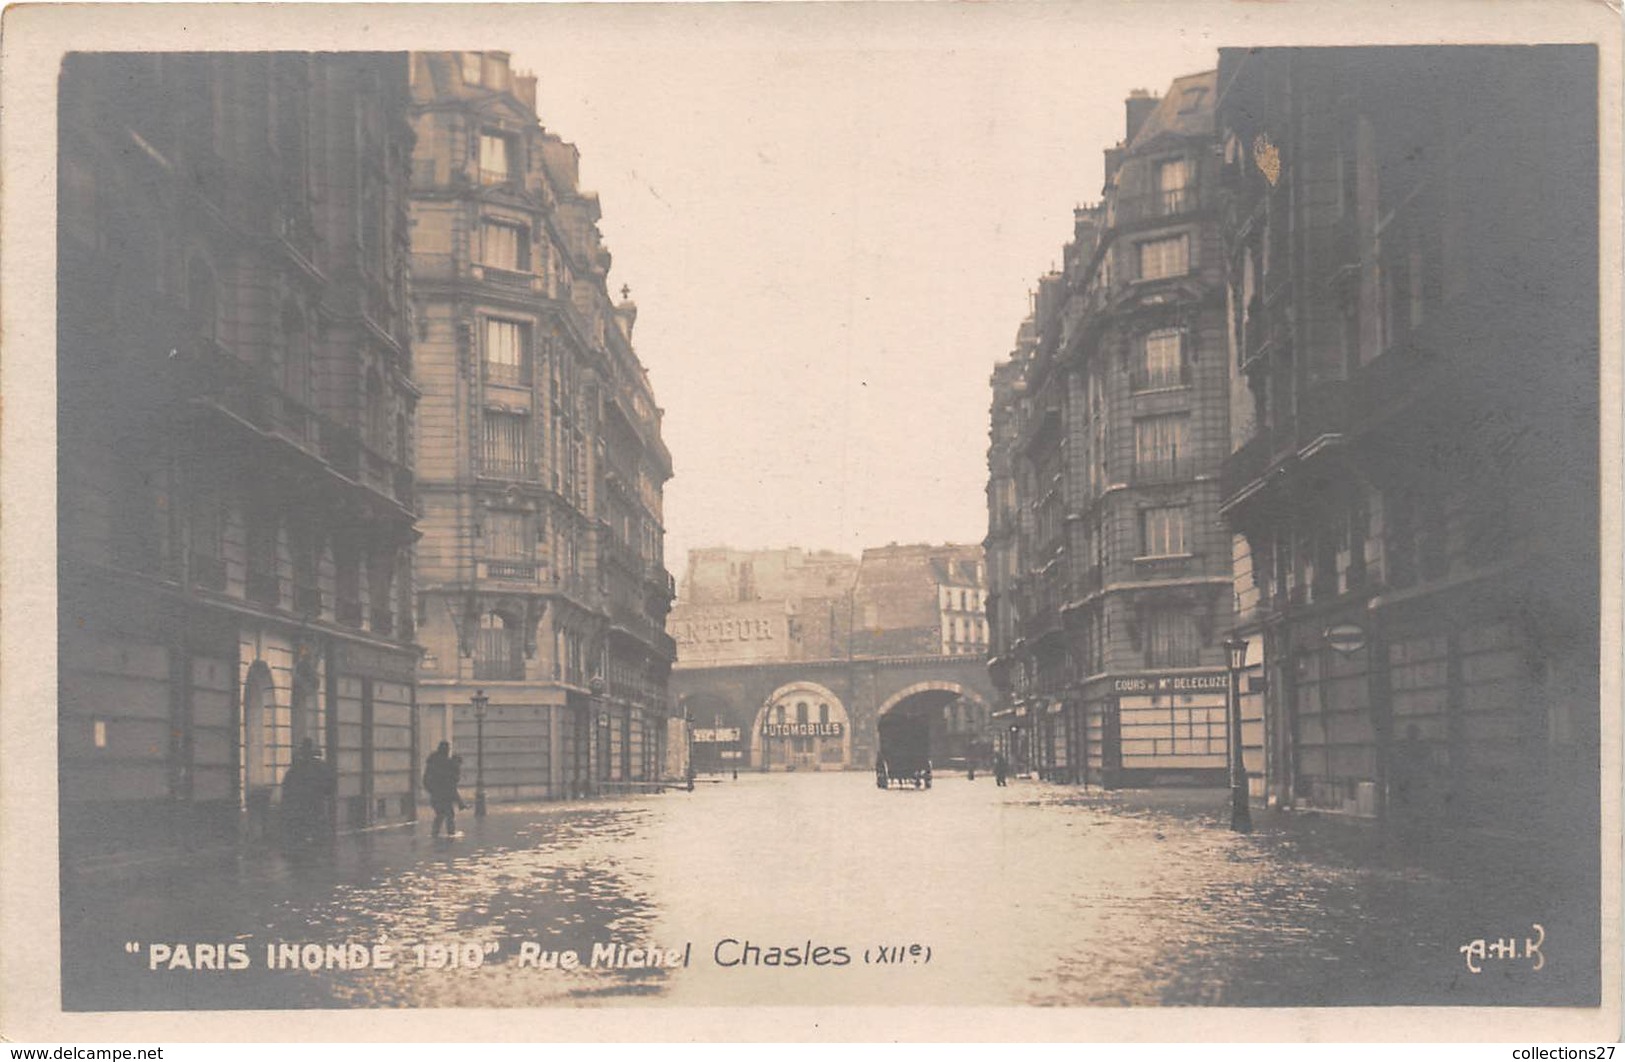 PARIS -INONDATION- RUE MICHEL, CHASLES XIIe - CARTE-PHOTO - La Crecida Del Sena De 1910